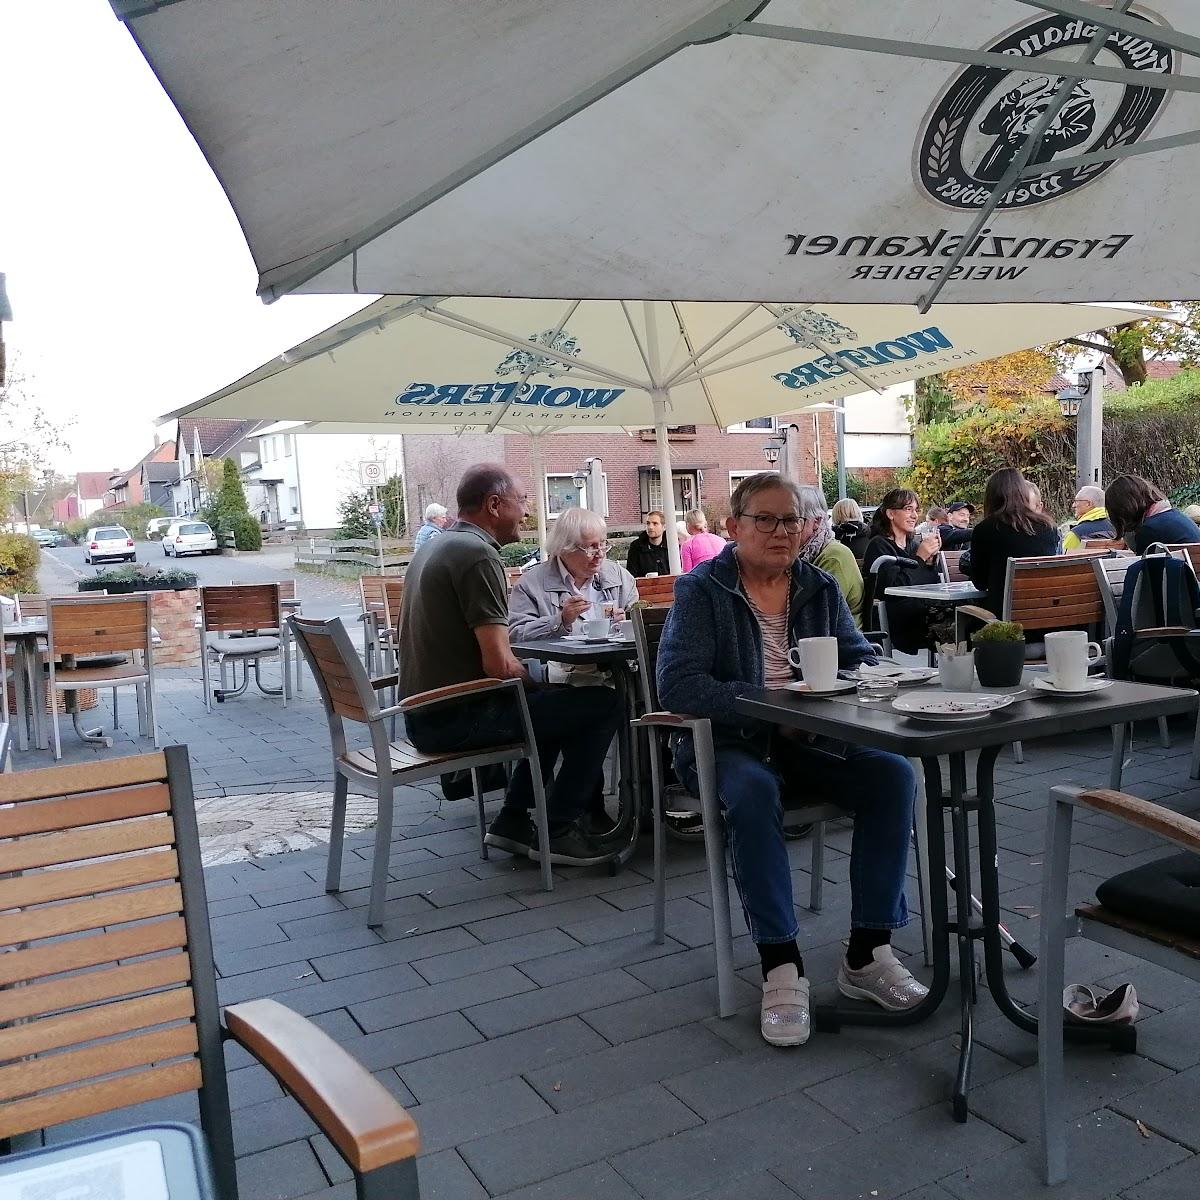 Restaurant "Das Müllerhaus Cafe" in Lehre